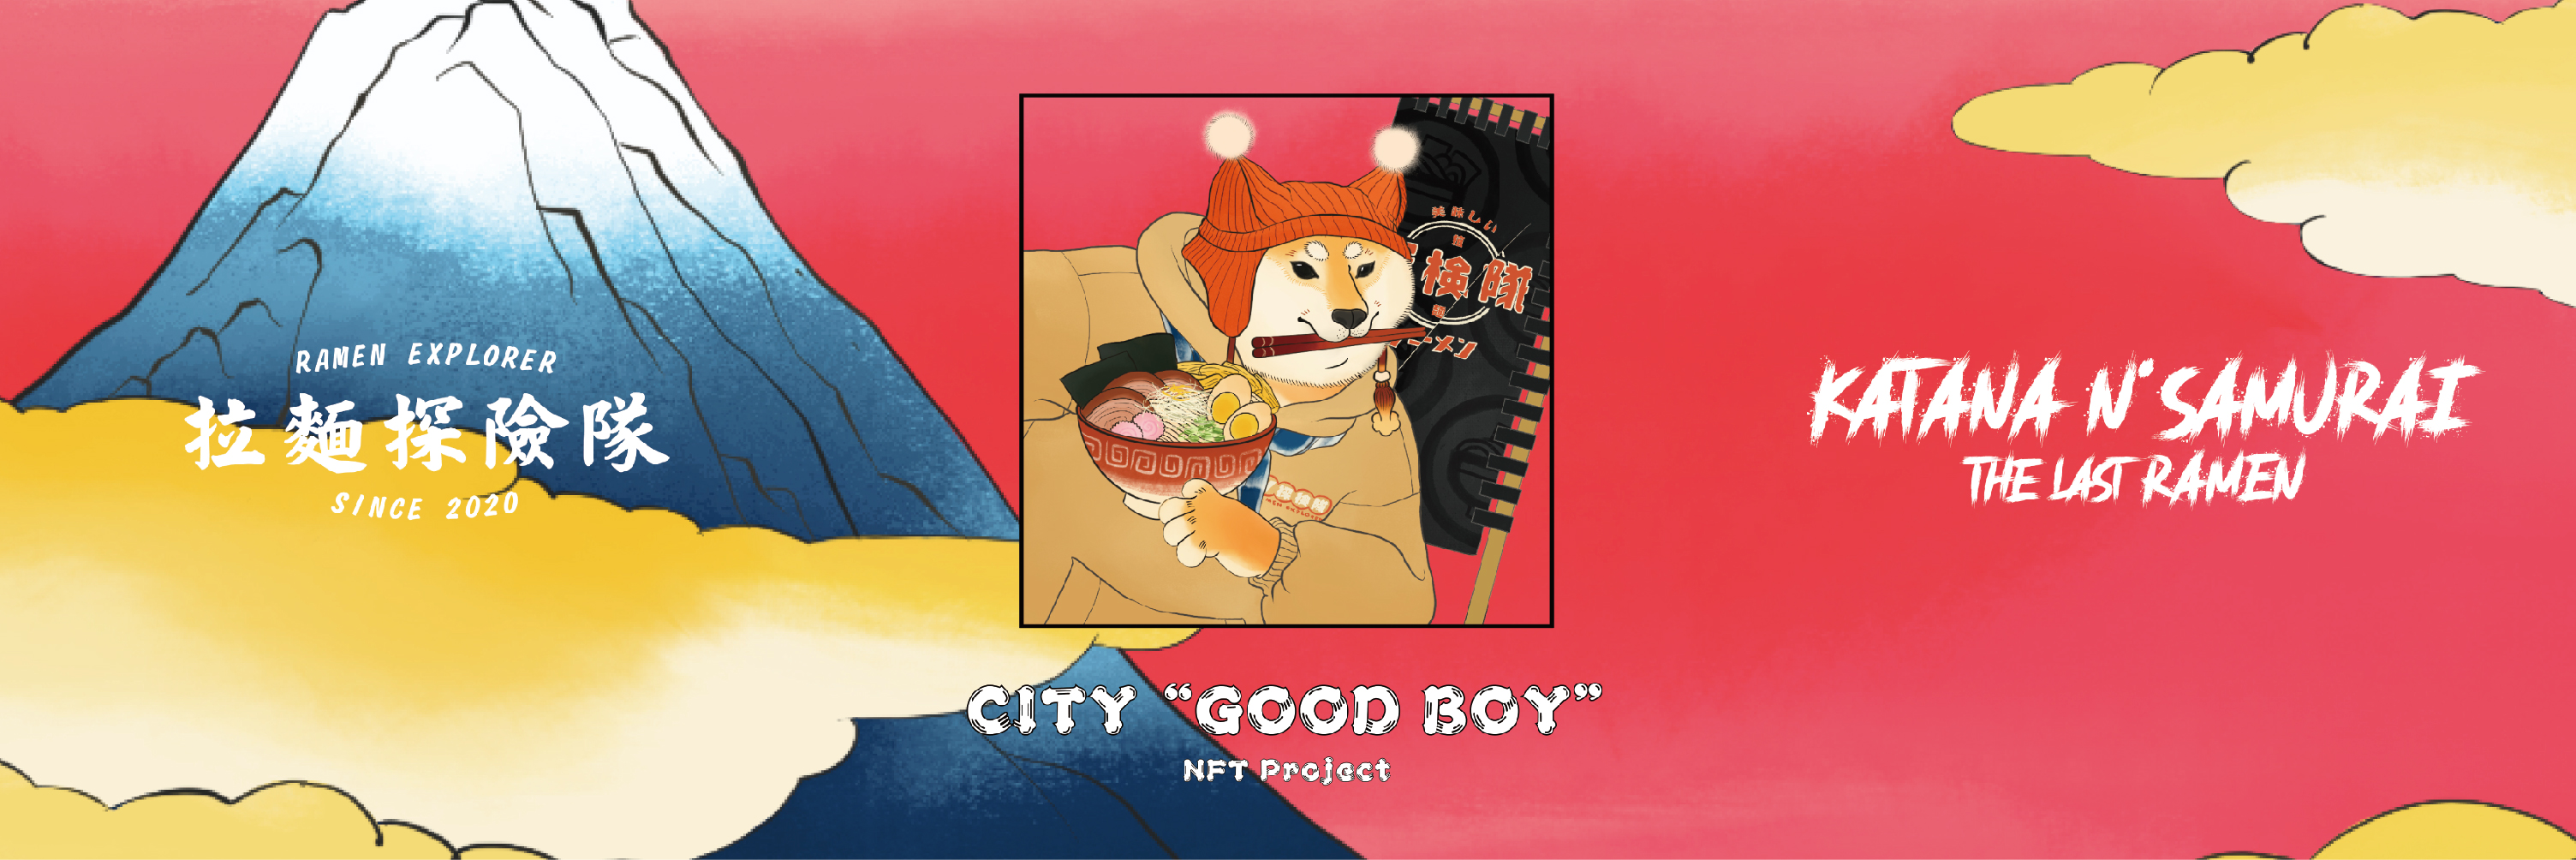 拉麵探險隊 × KATANA N' SAMURAI跨界聯名NFT-《CITY “GOOD BOY”》